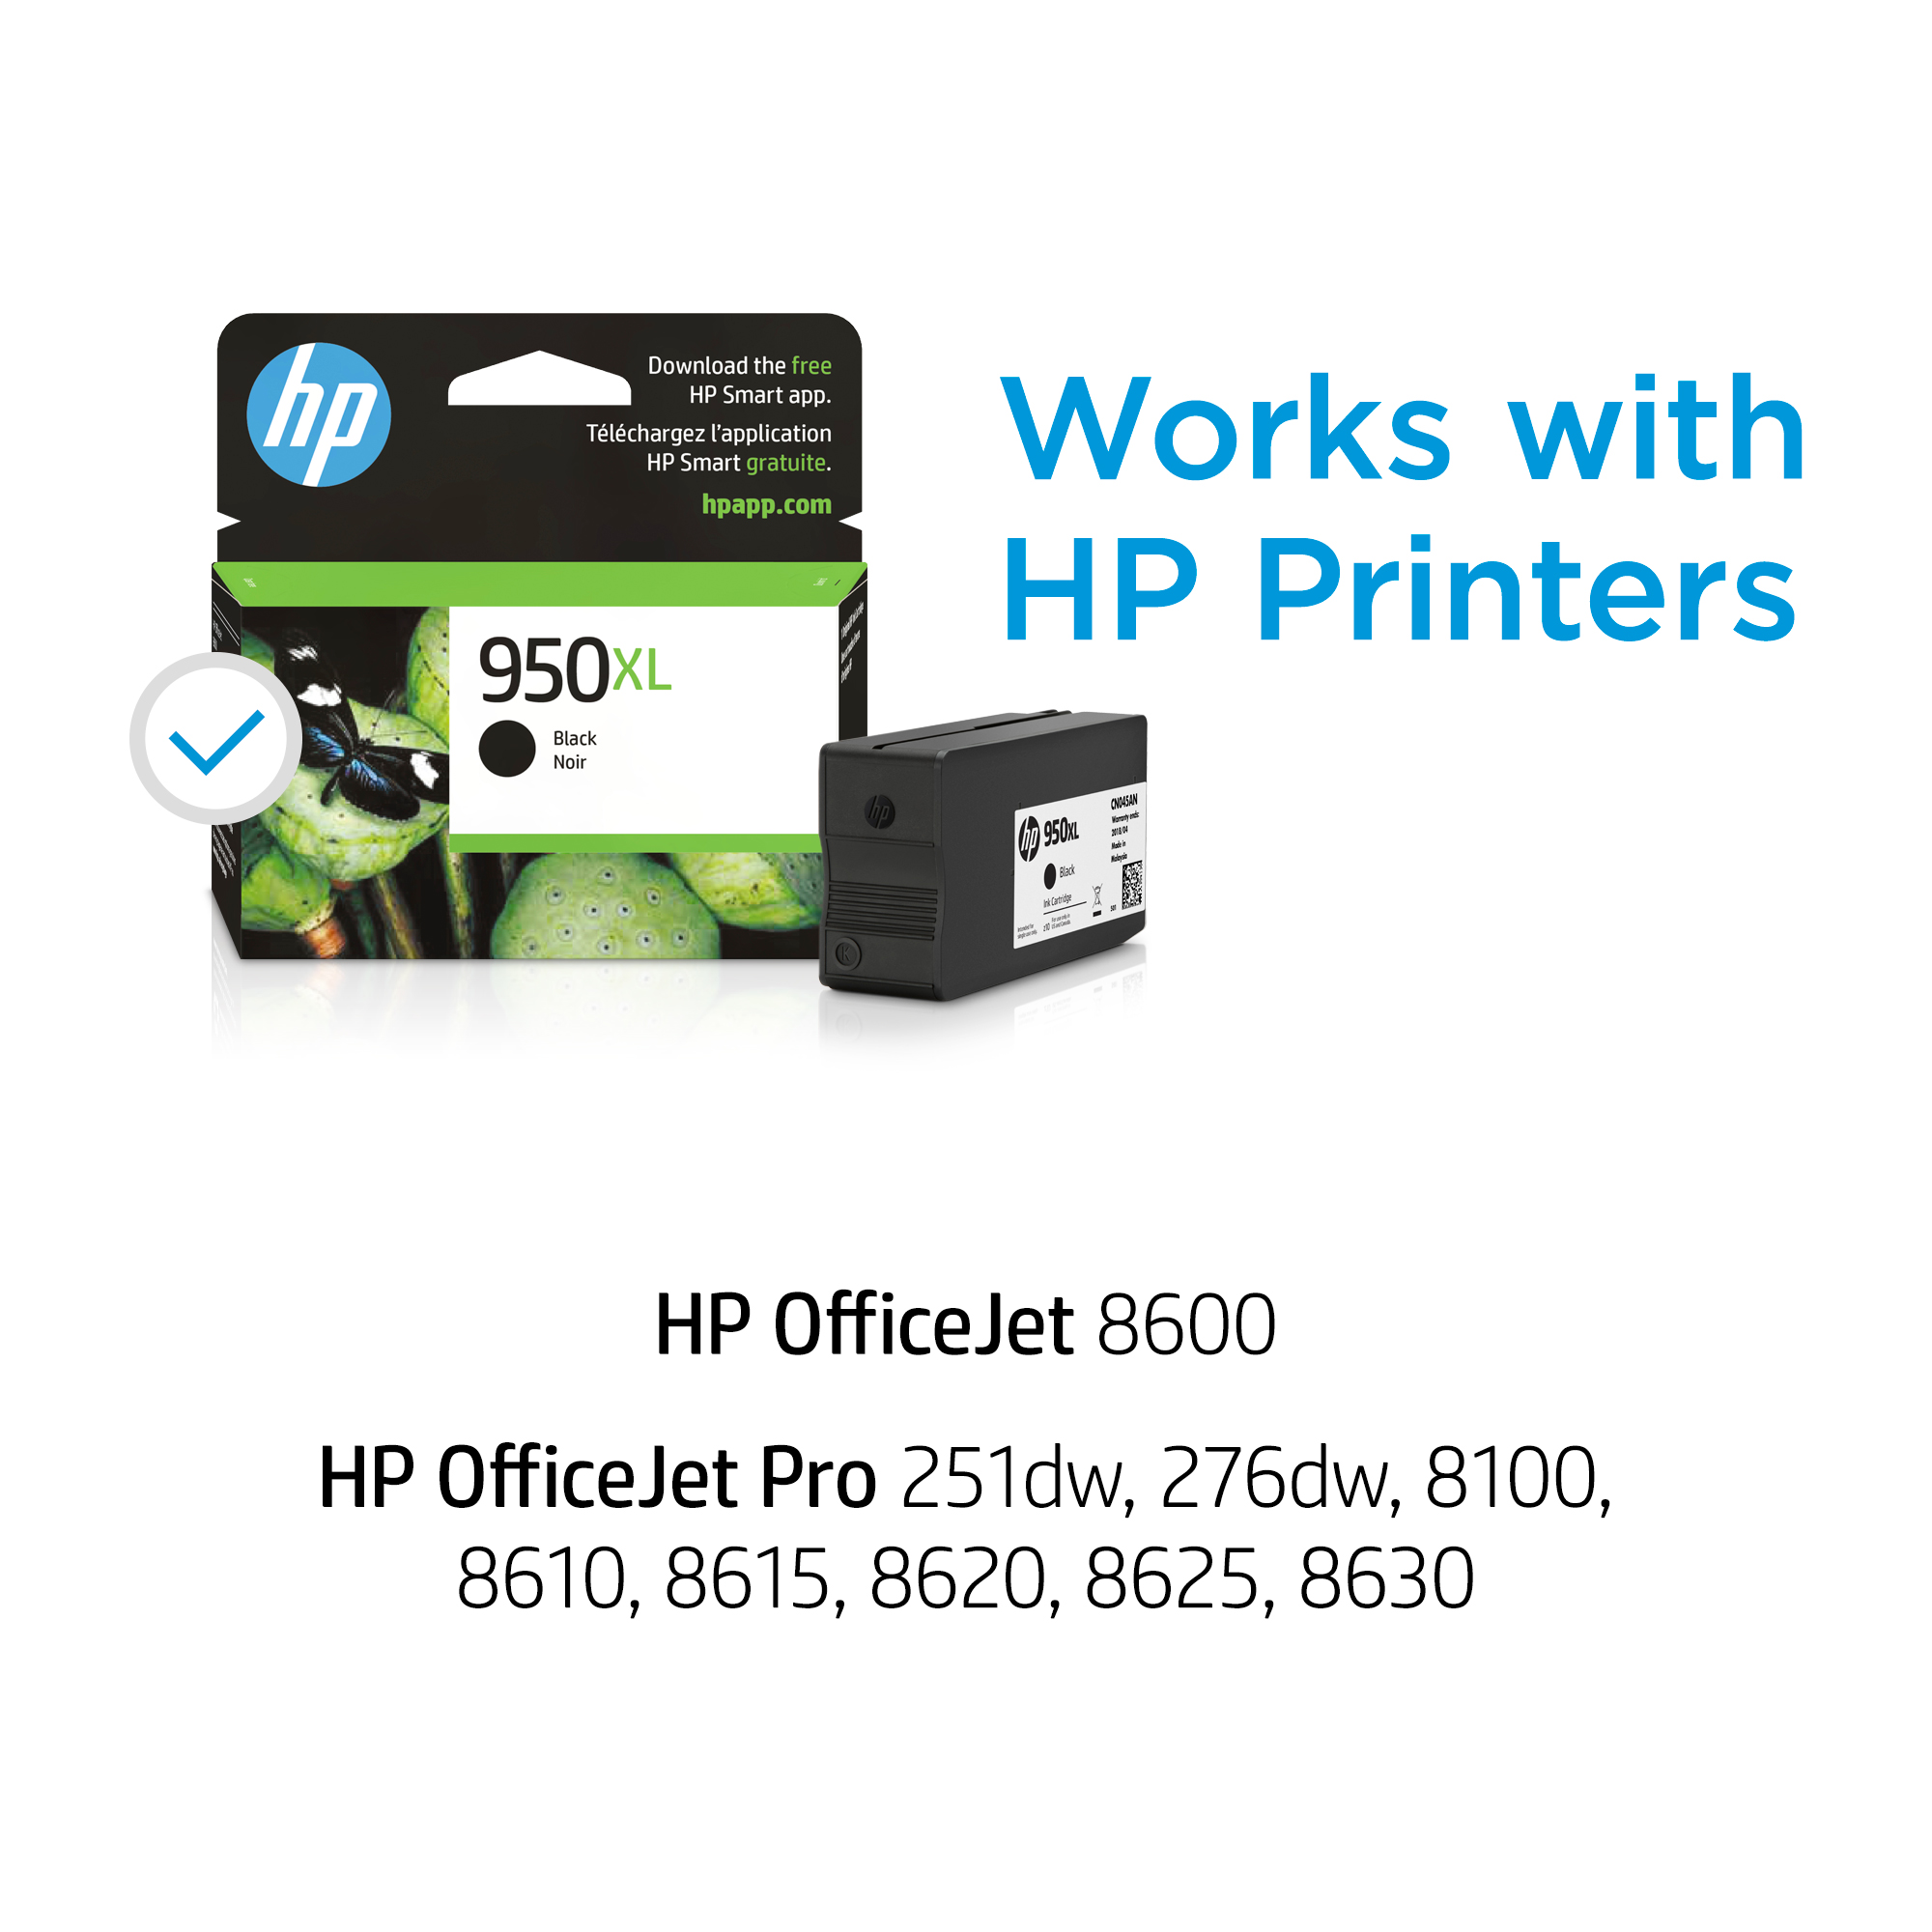 HP Officejet Pro 7740 ink cartridges - Smart Ink Cartridges